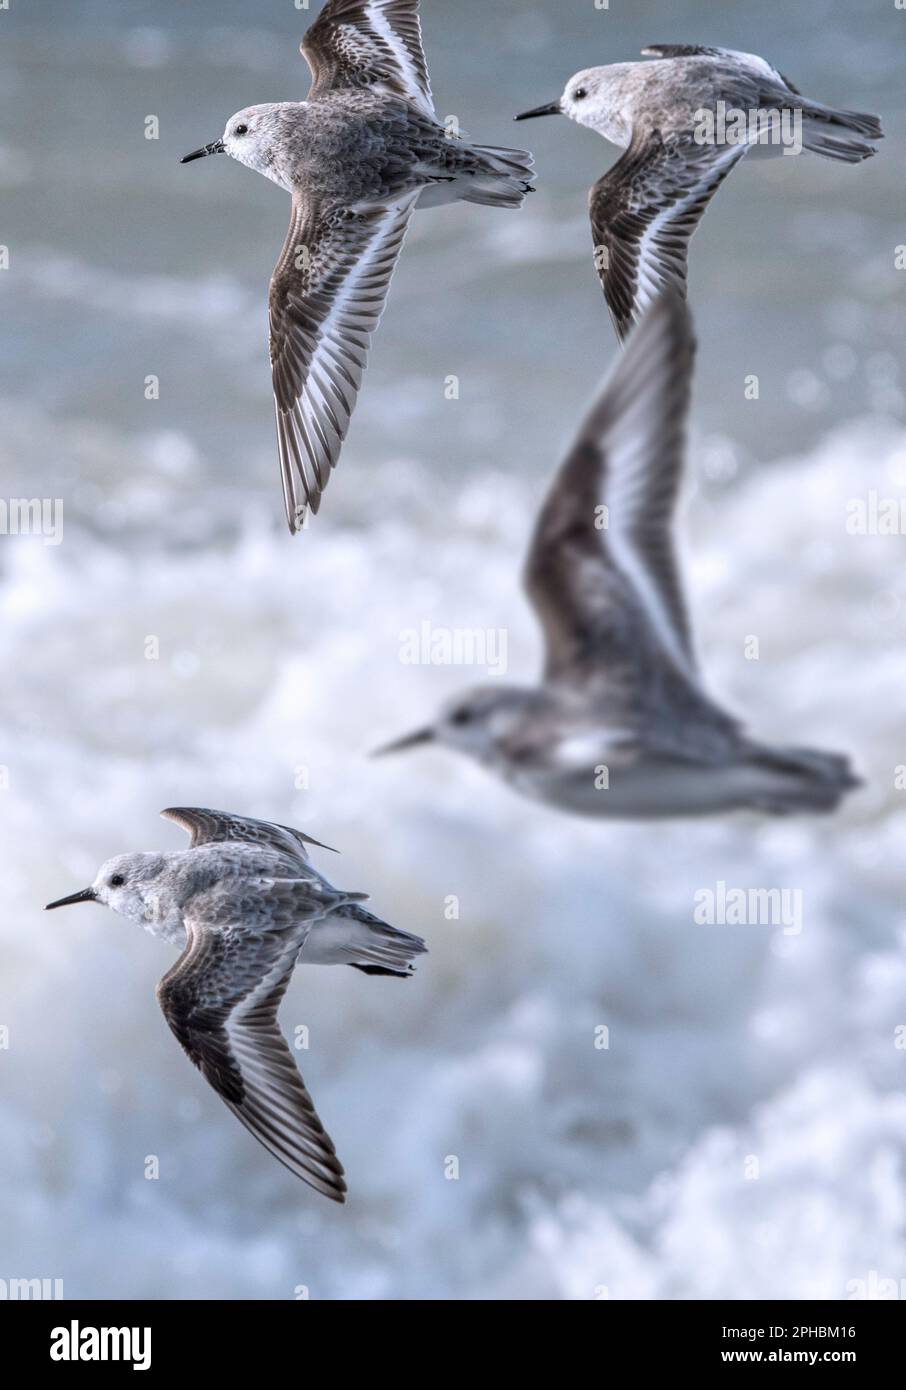 Gregge di pascoli (Calidris alba) uccelli migratori che volano in un piumaggio non riproduttivo in una giornata ventosa durante la tempesta invernale tardiva all'inizio della primavera Foto Stock